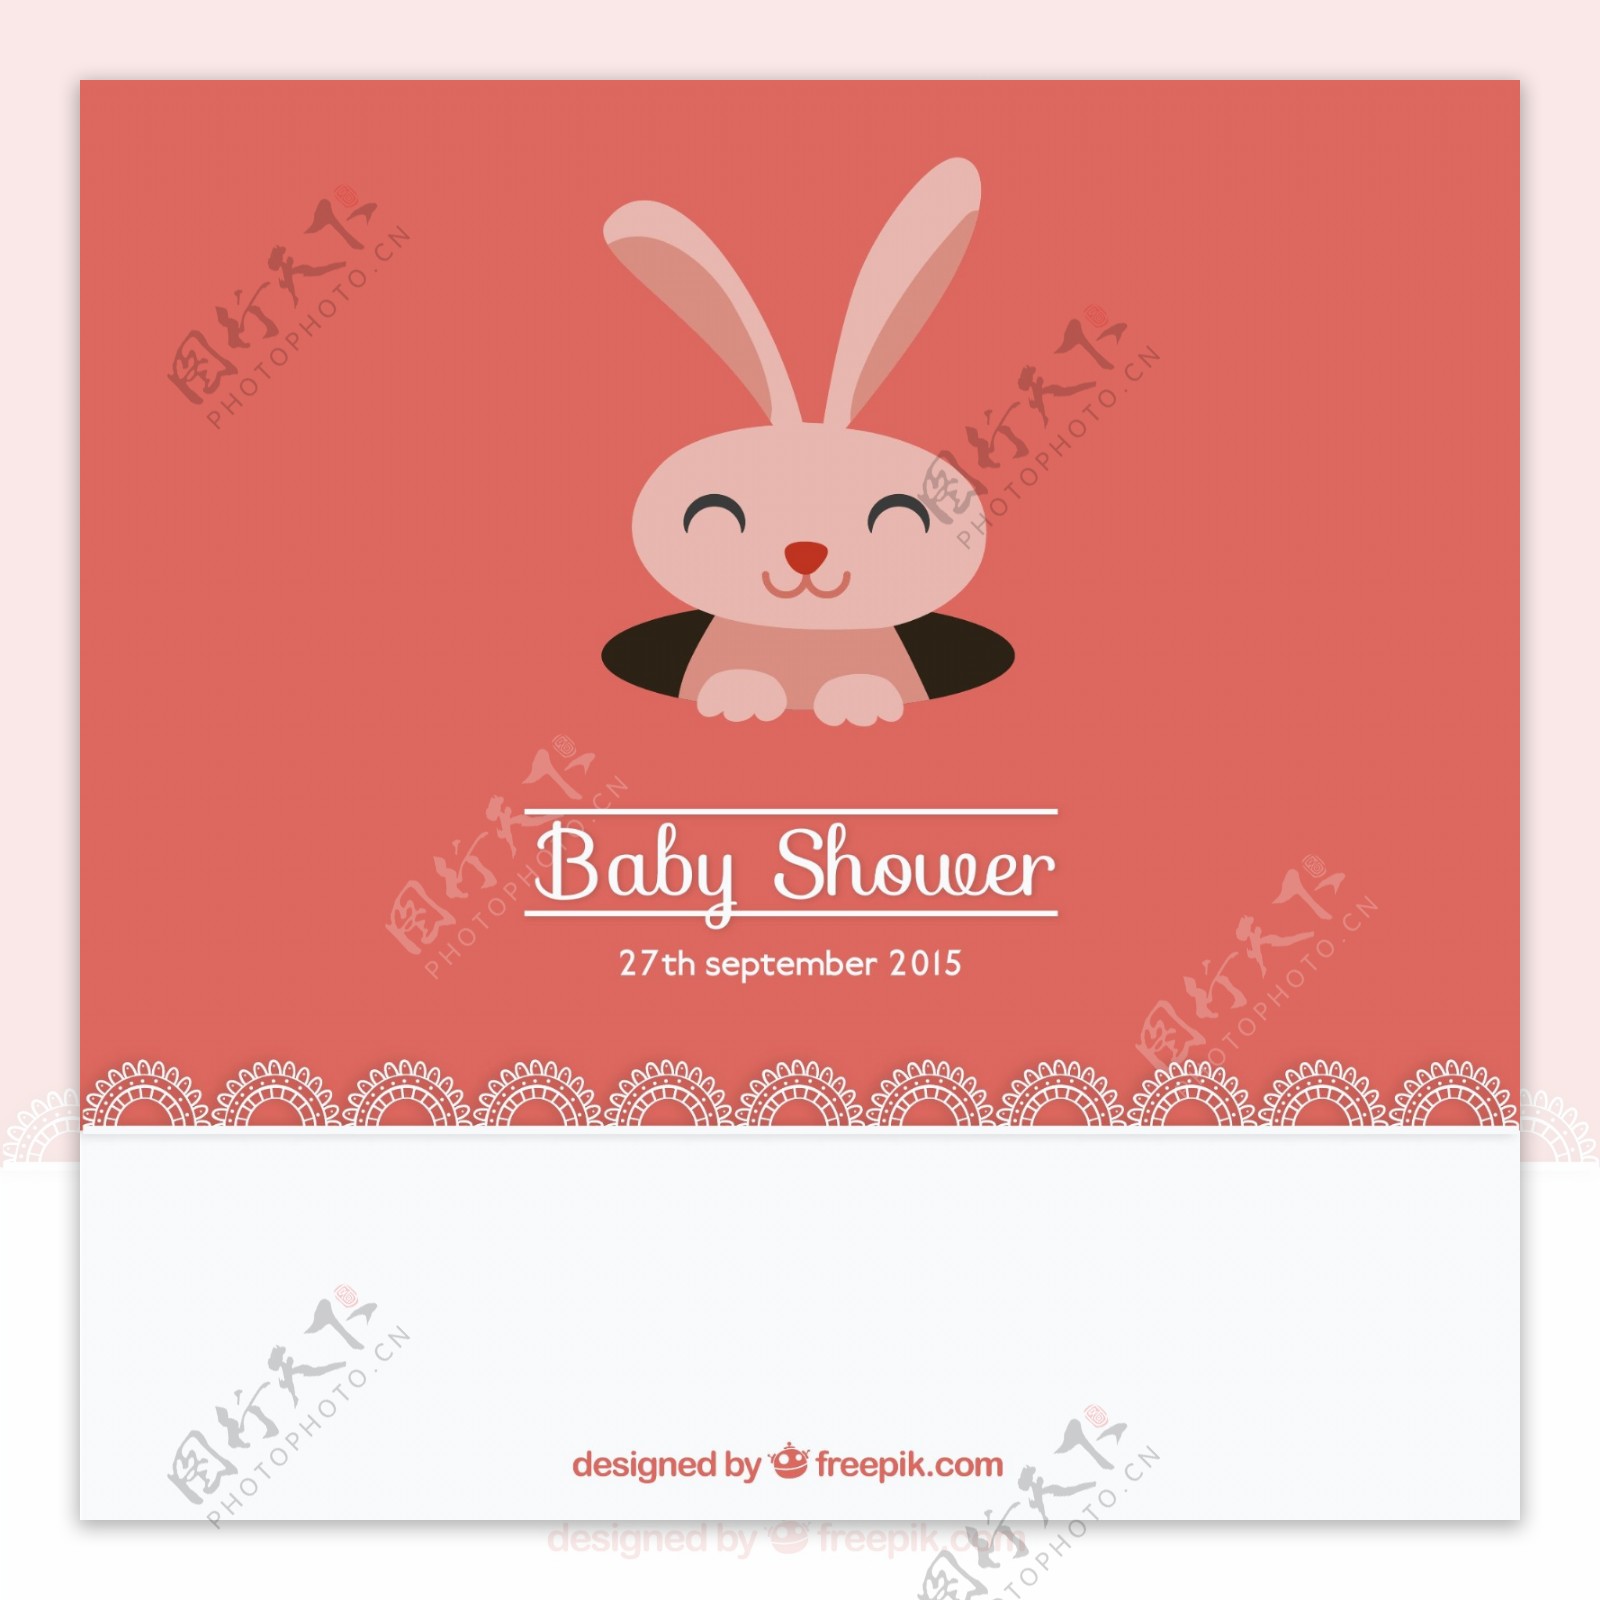 可爱兔子迎婴派对邀请卡矢量图